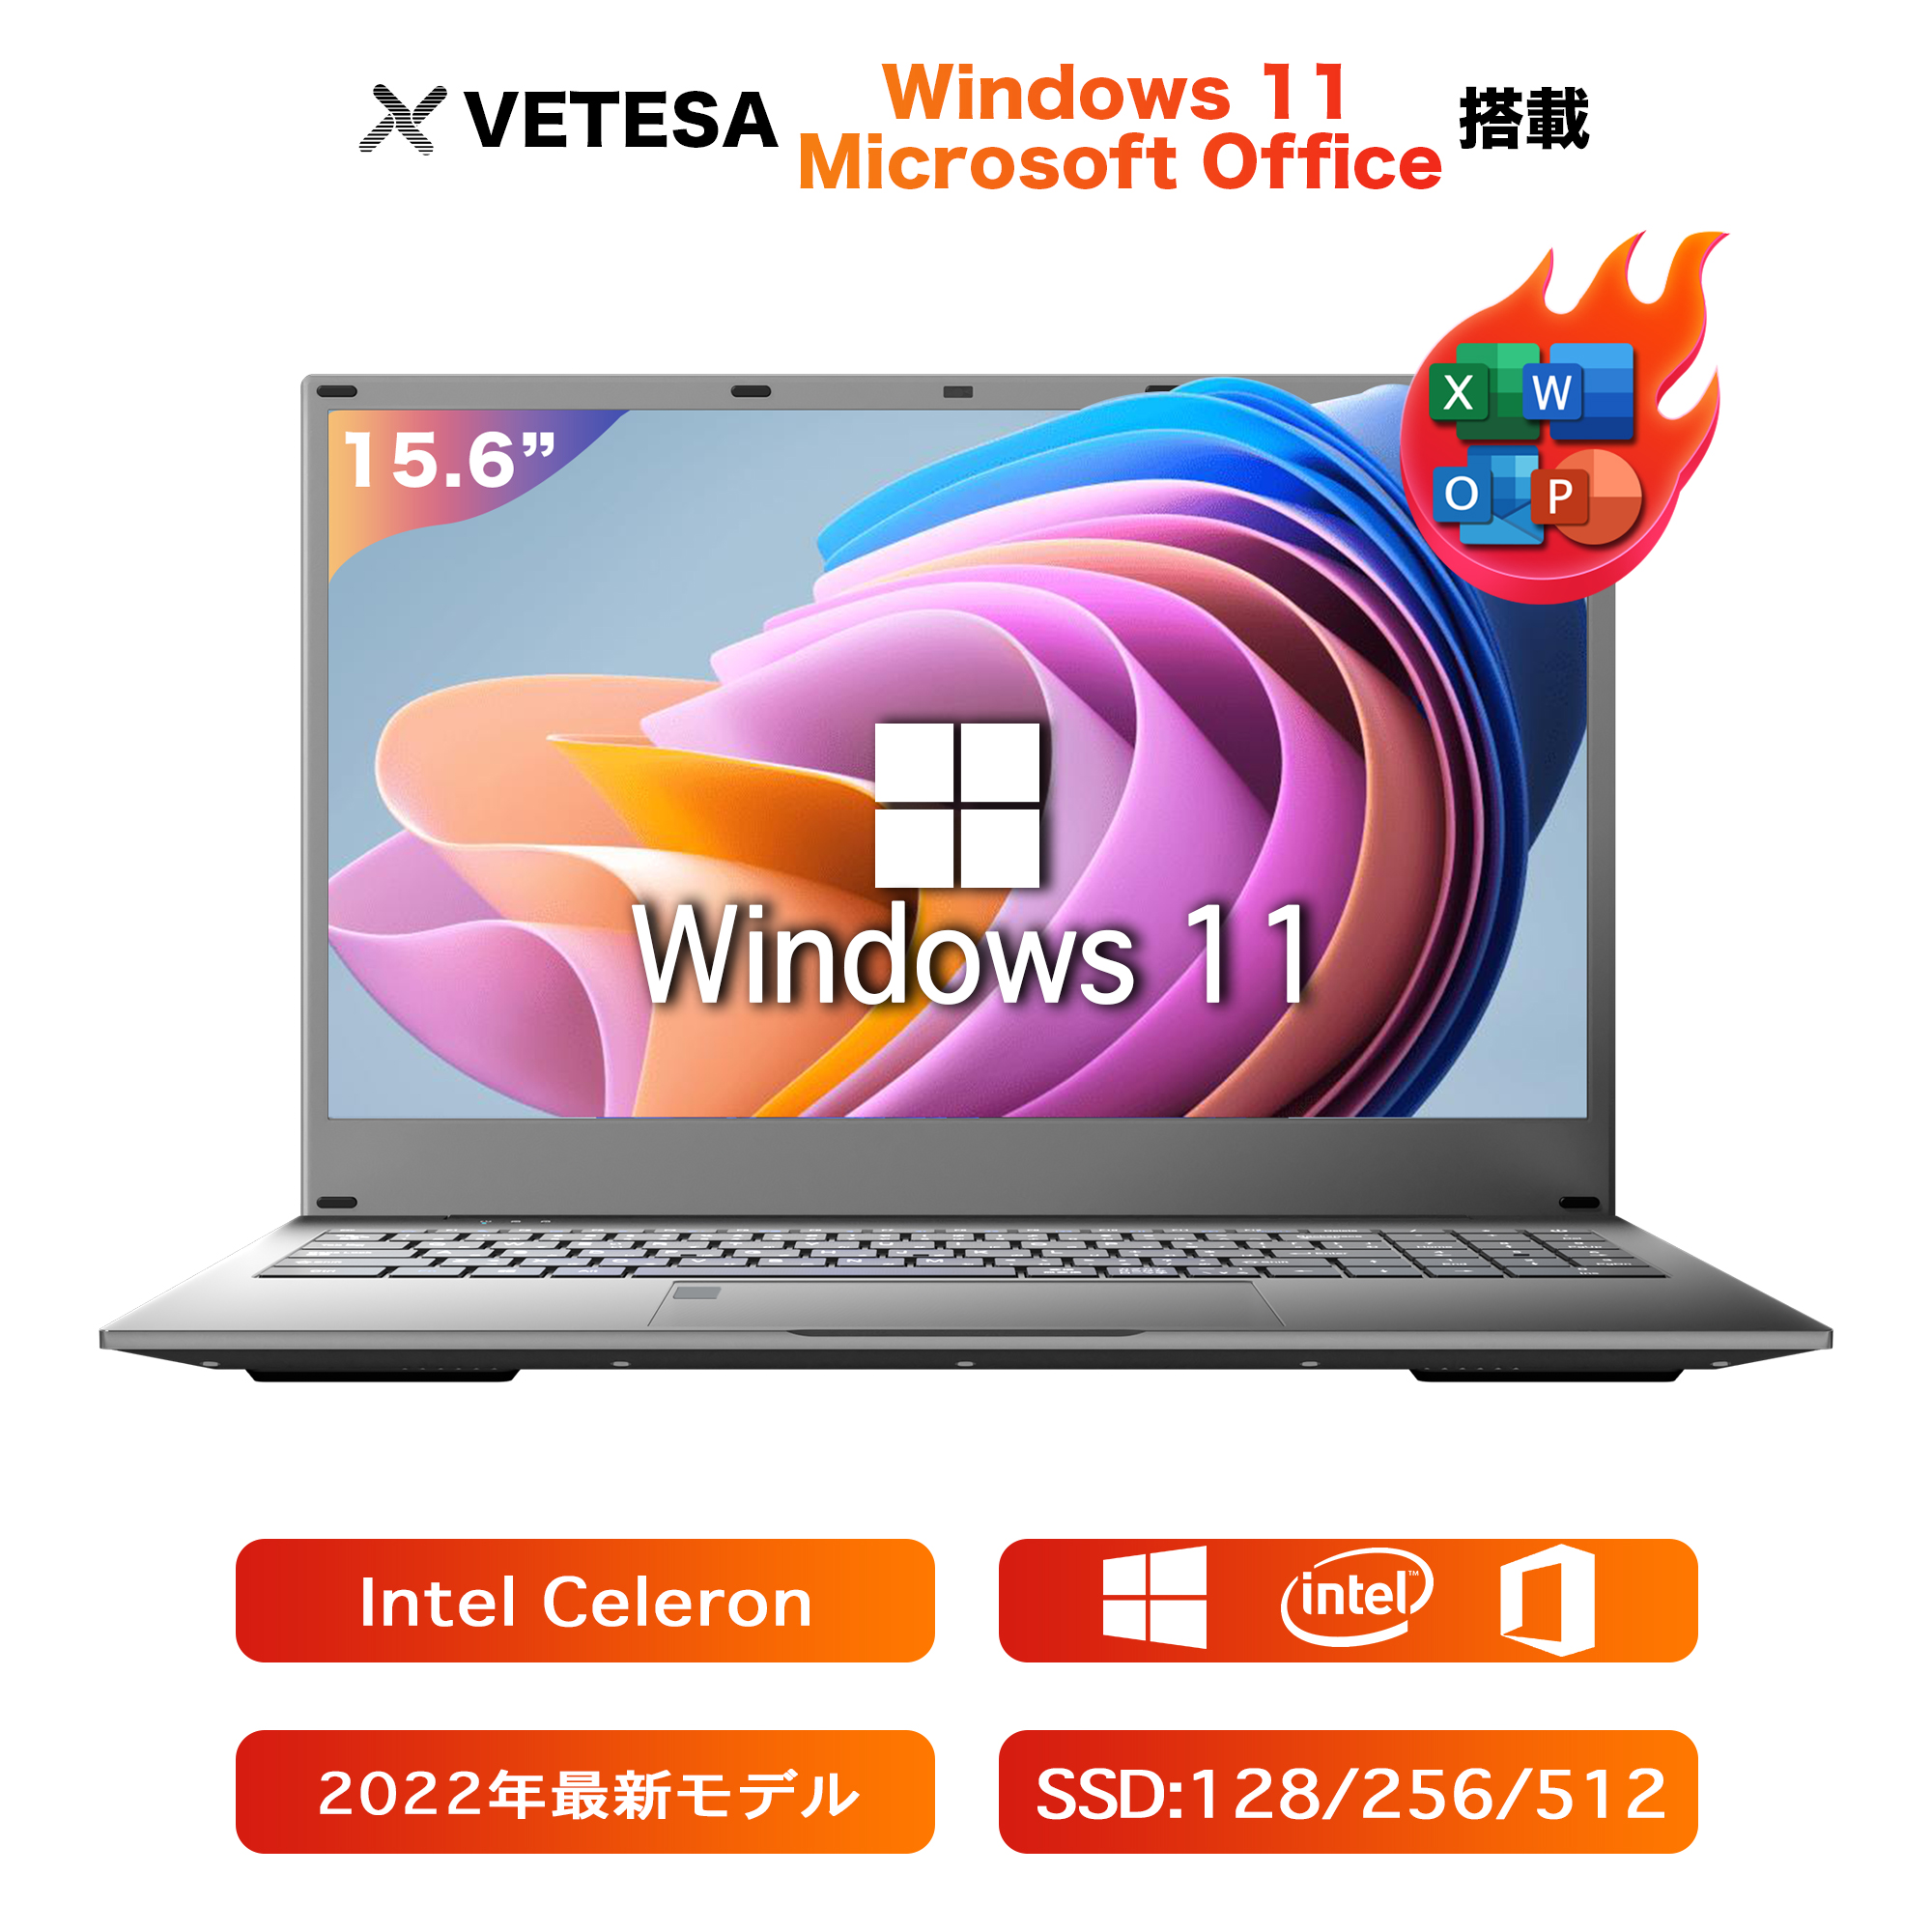 ノートパソコン新品 PC 15.6型液晶/日本語キーボード/Celeronメモリー:8GB/高速SSD:128GB/ 初期設定済  Win11/15.6型液晶/Webカメラ/10キー/5G WIFI搭載/指紋認証 :N15DP1:VETESA 通販 